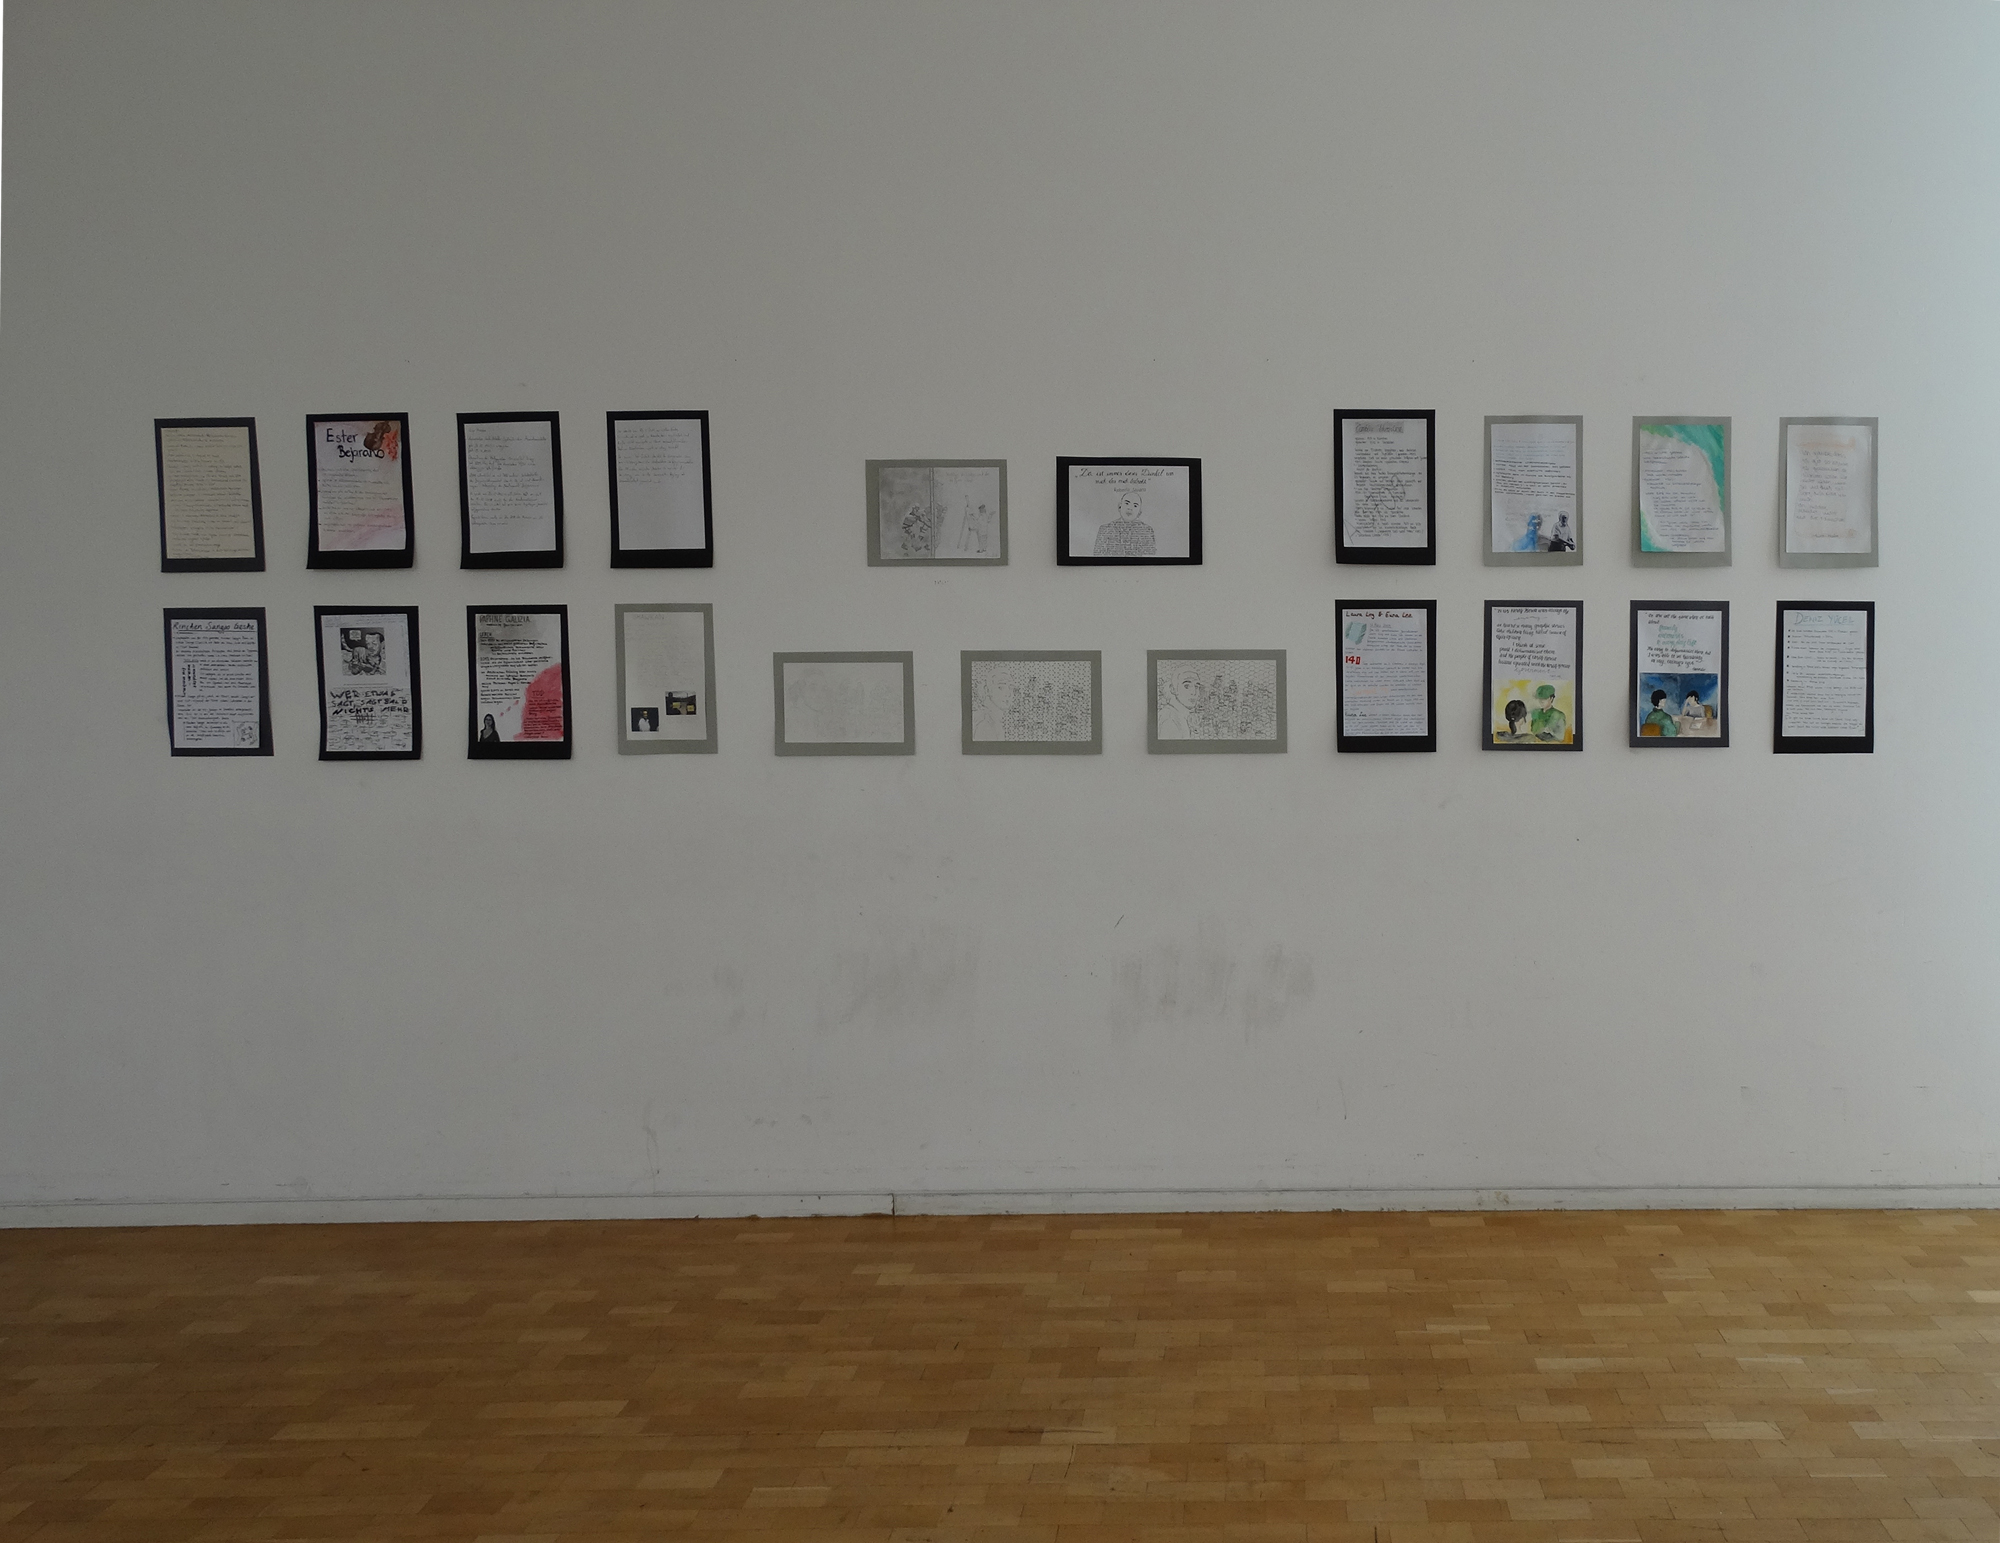 Bilder von Schülerinnen und Schülern hängen in der Ausstellung. 